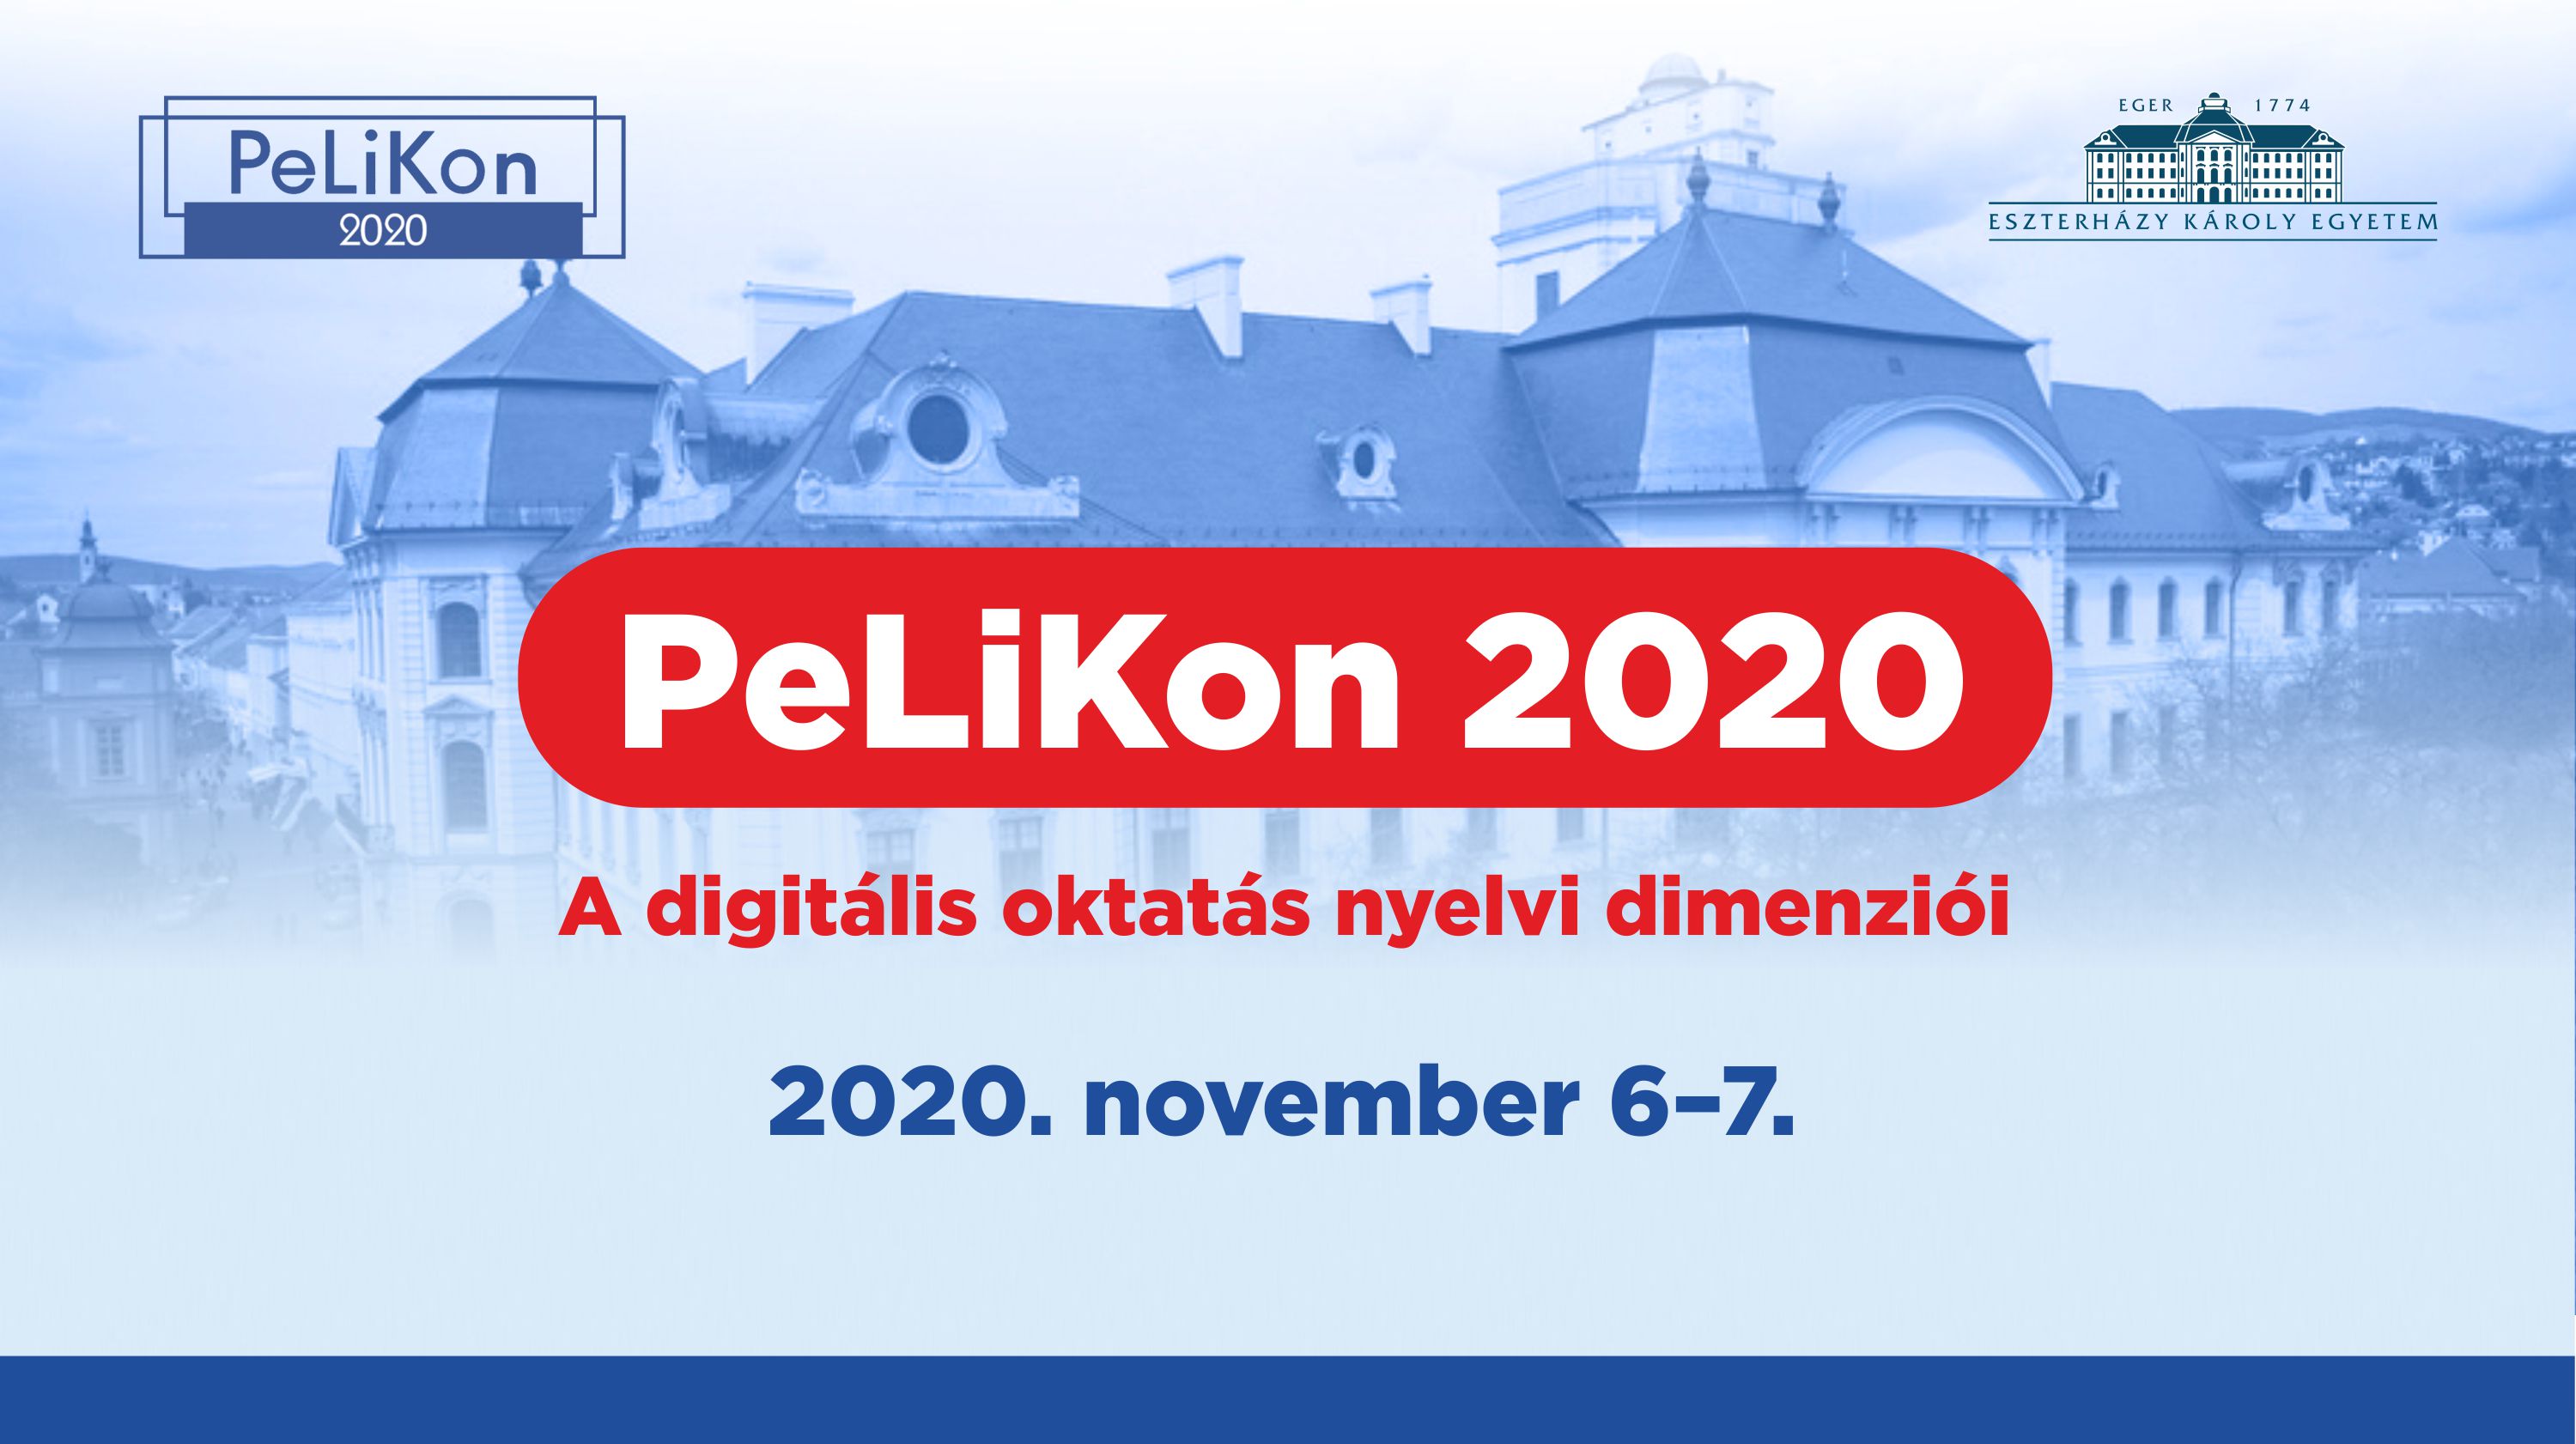 PeLiKon 2020